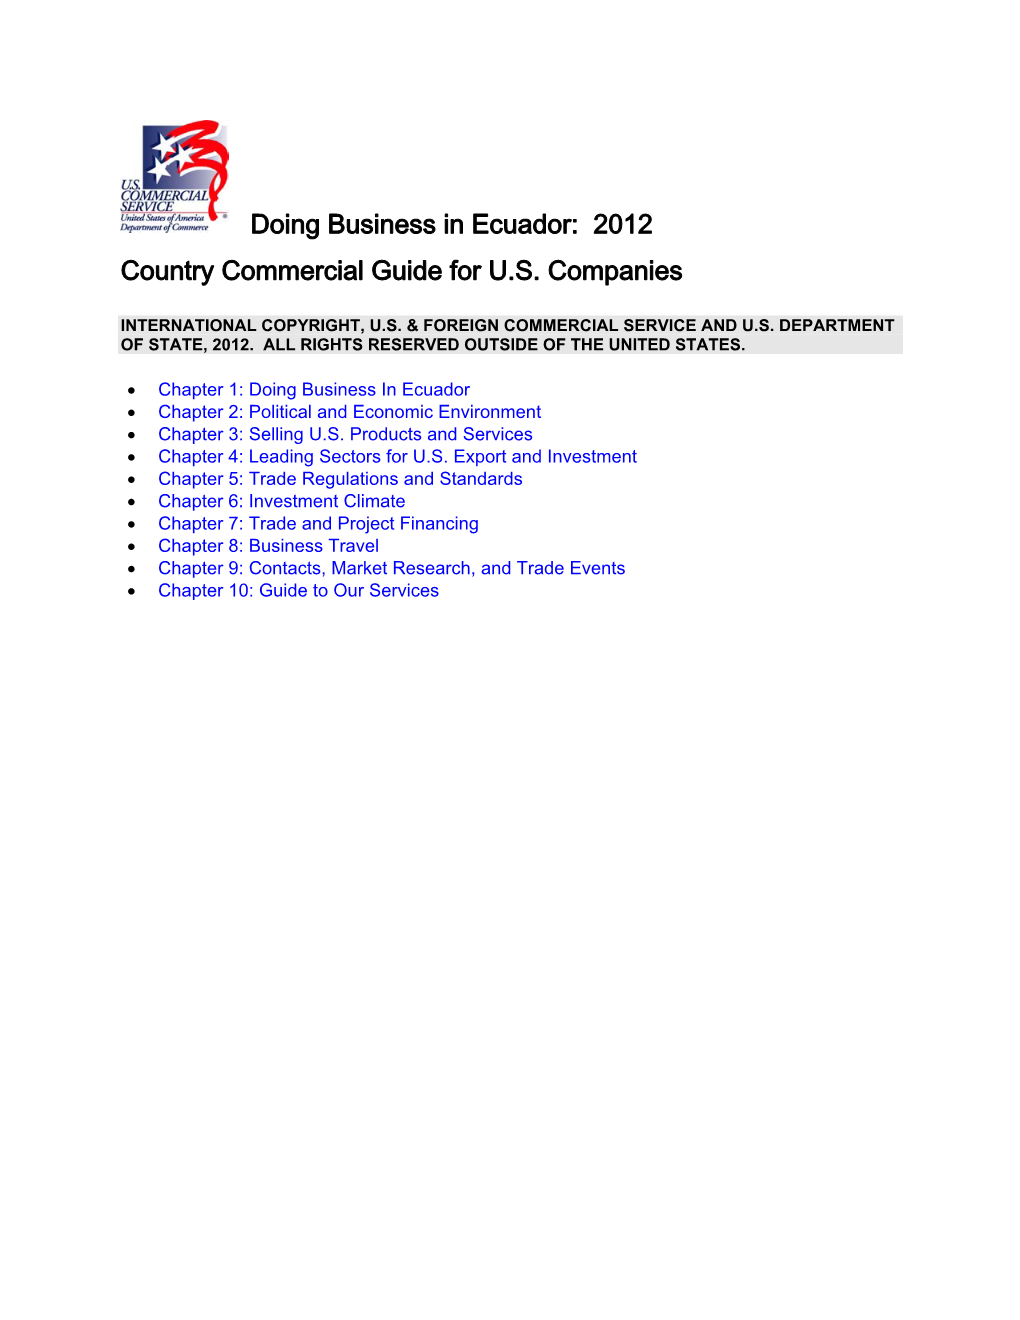 Ecuador: 2012 Country Commercial Guide for U.S